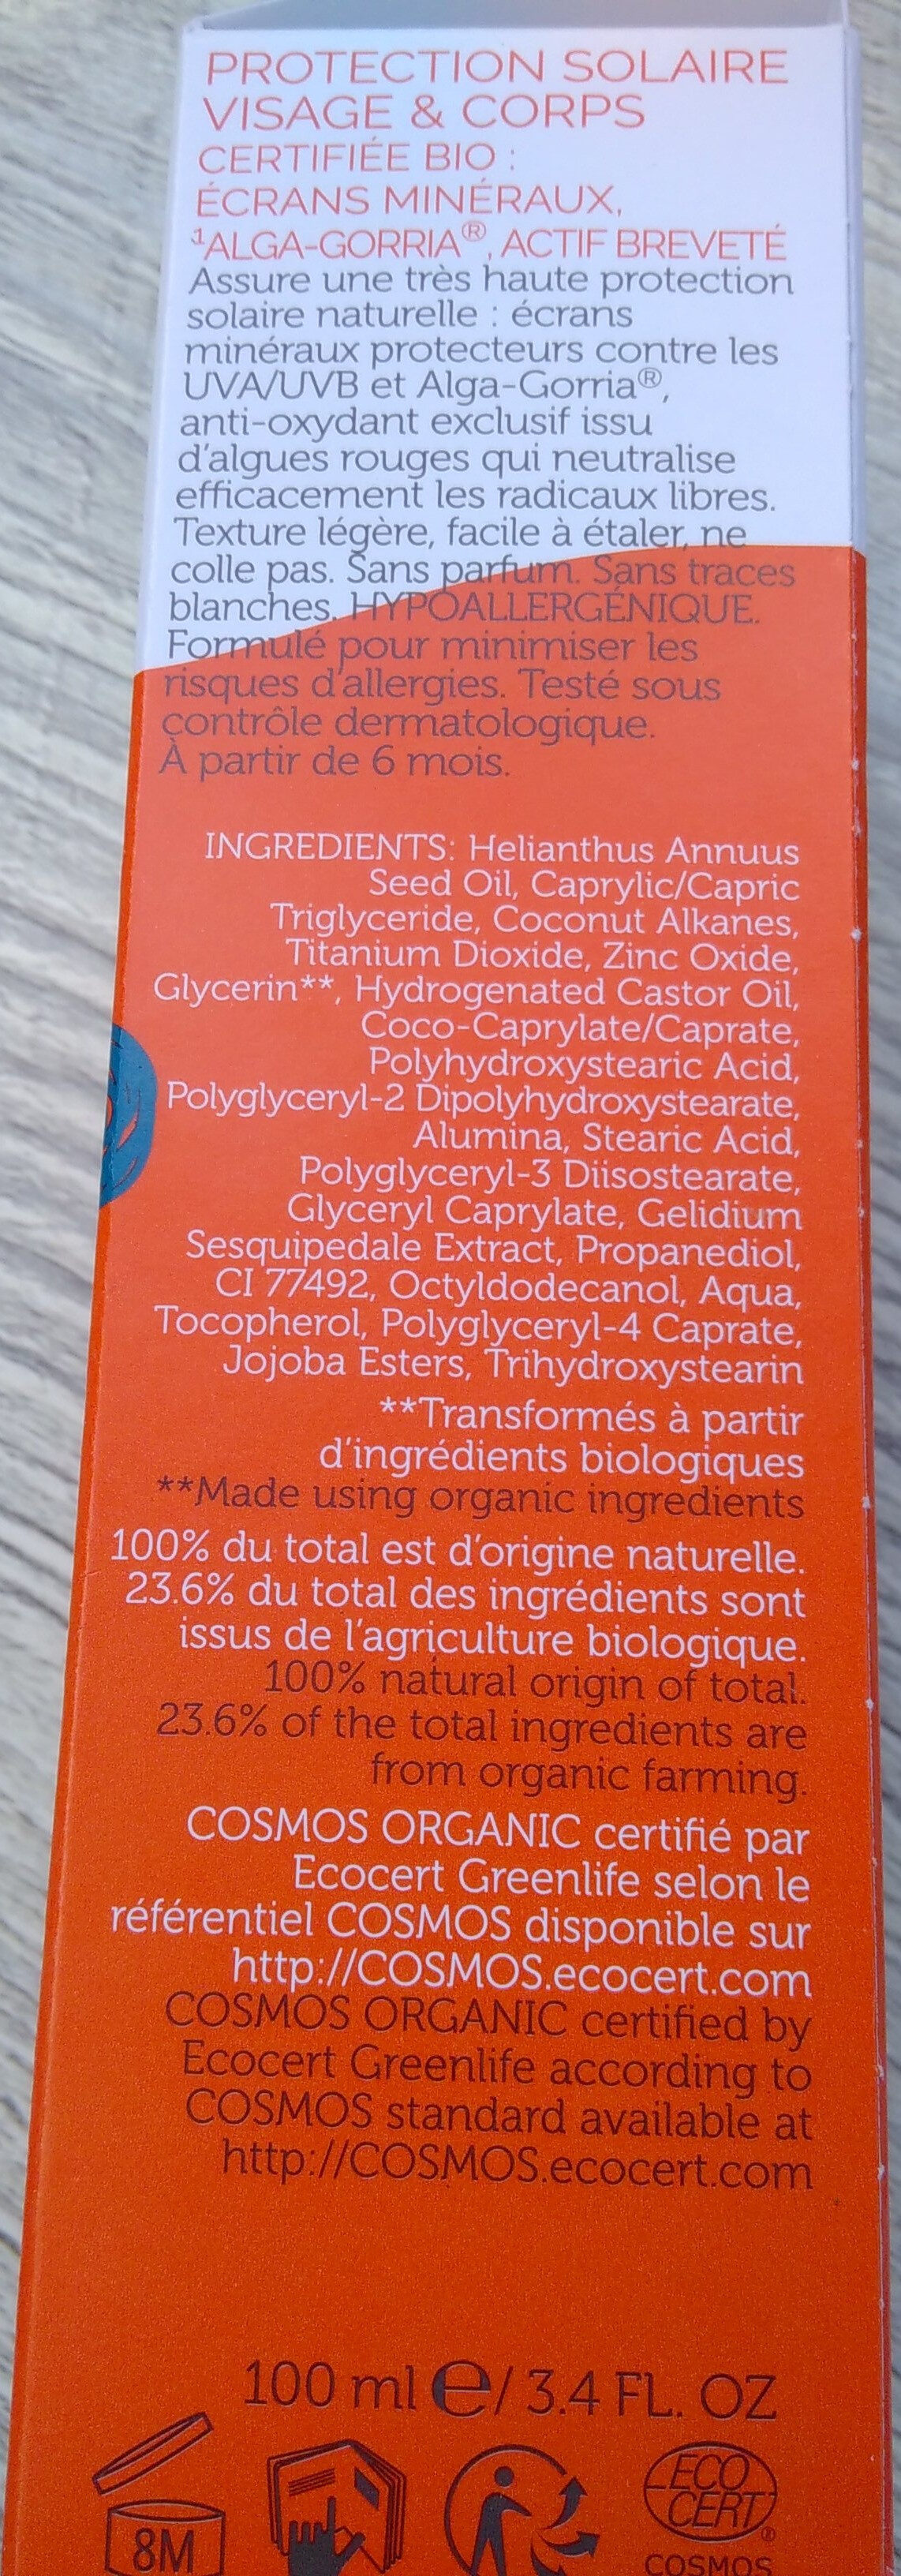 crème solaire - Ingredientes - fr